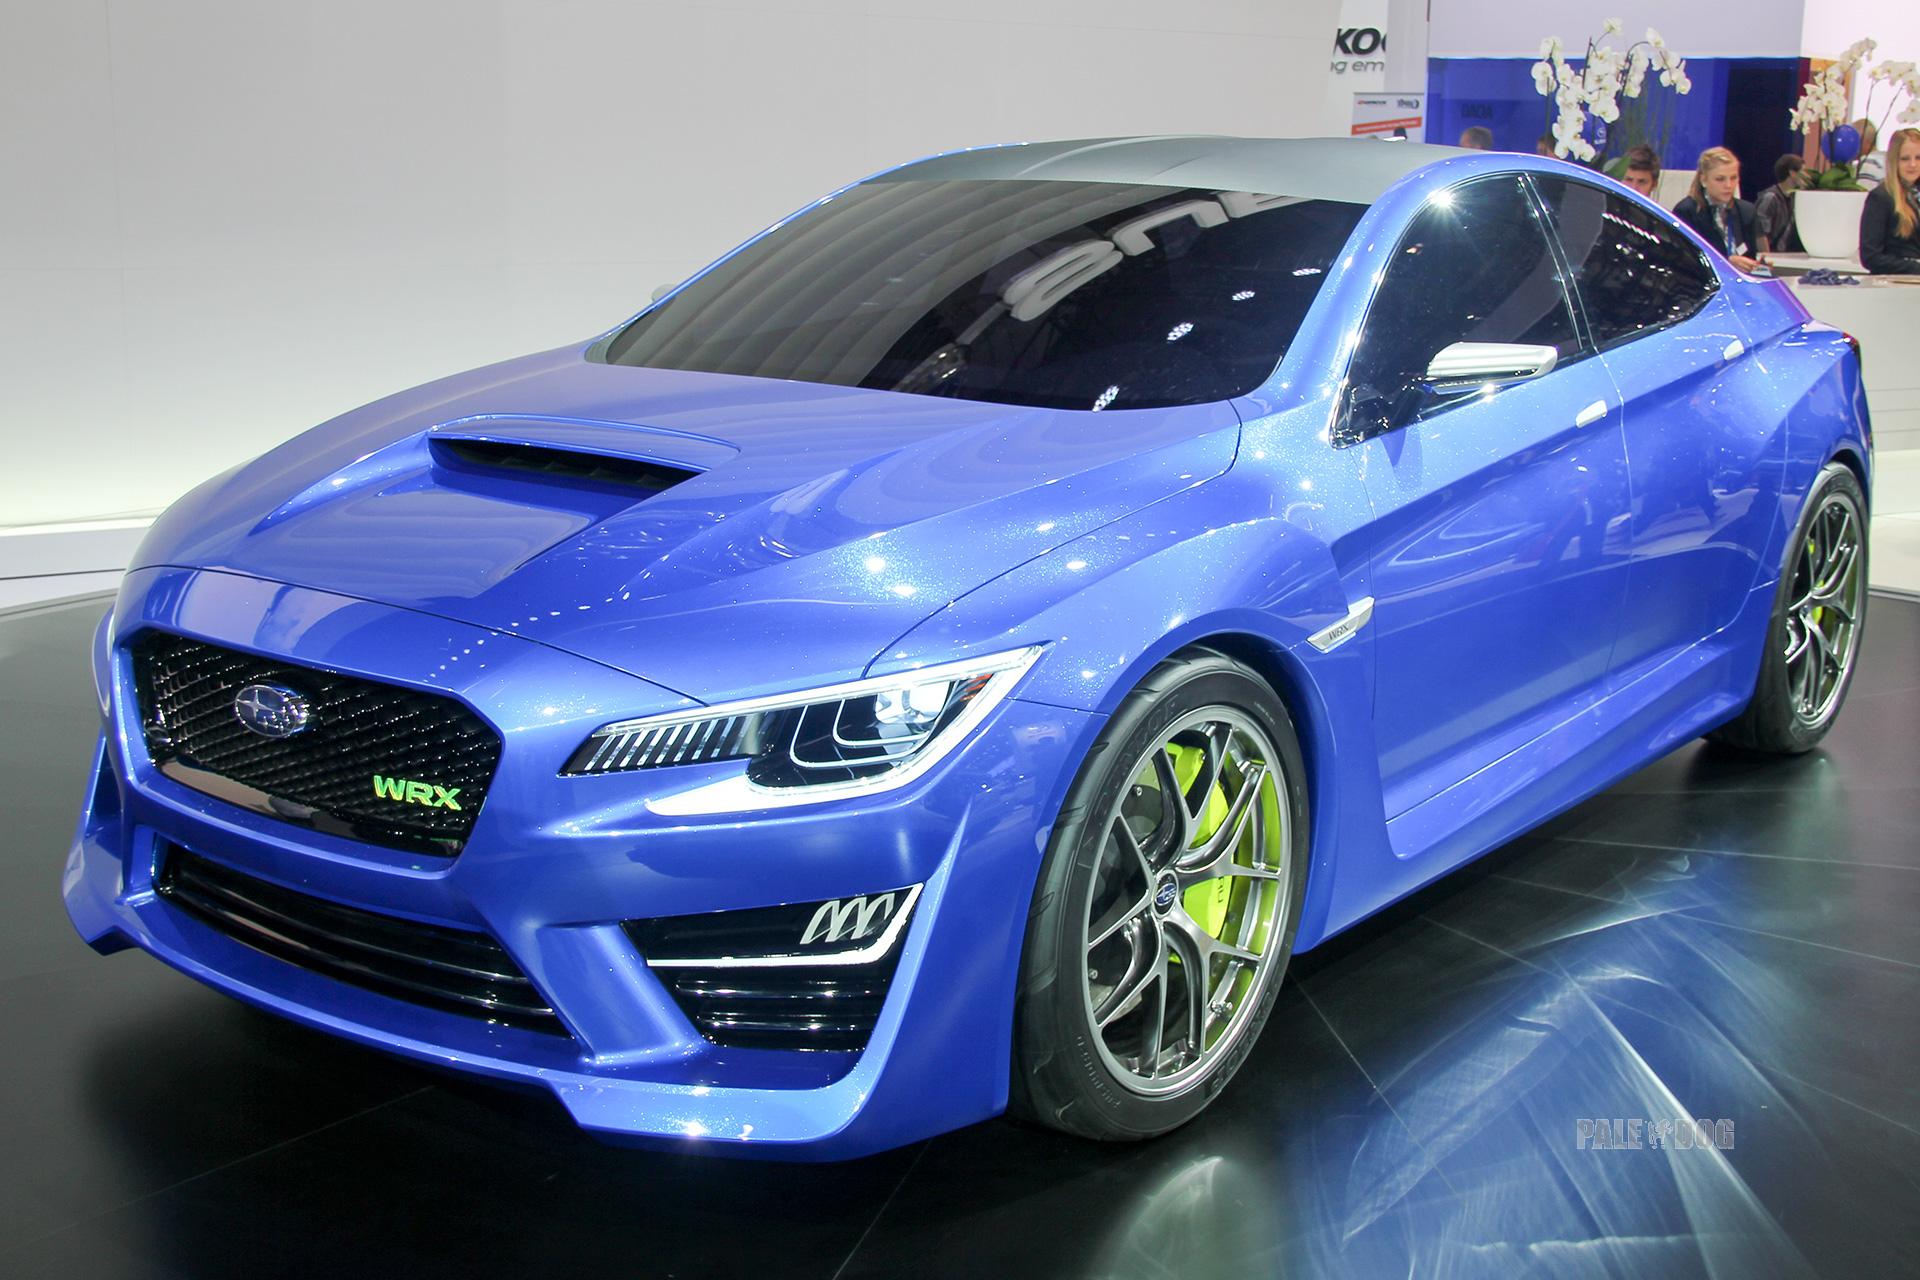 2013 Subaru WRX Concept